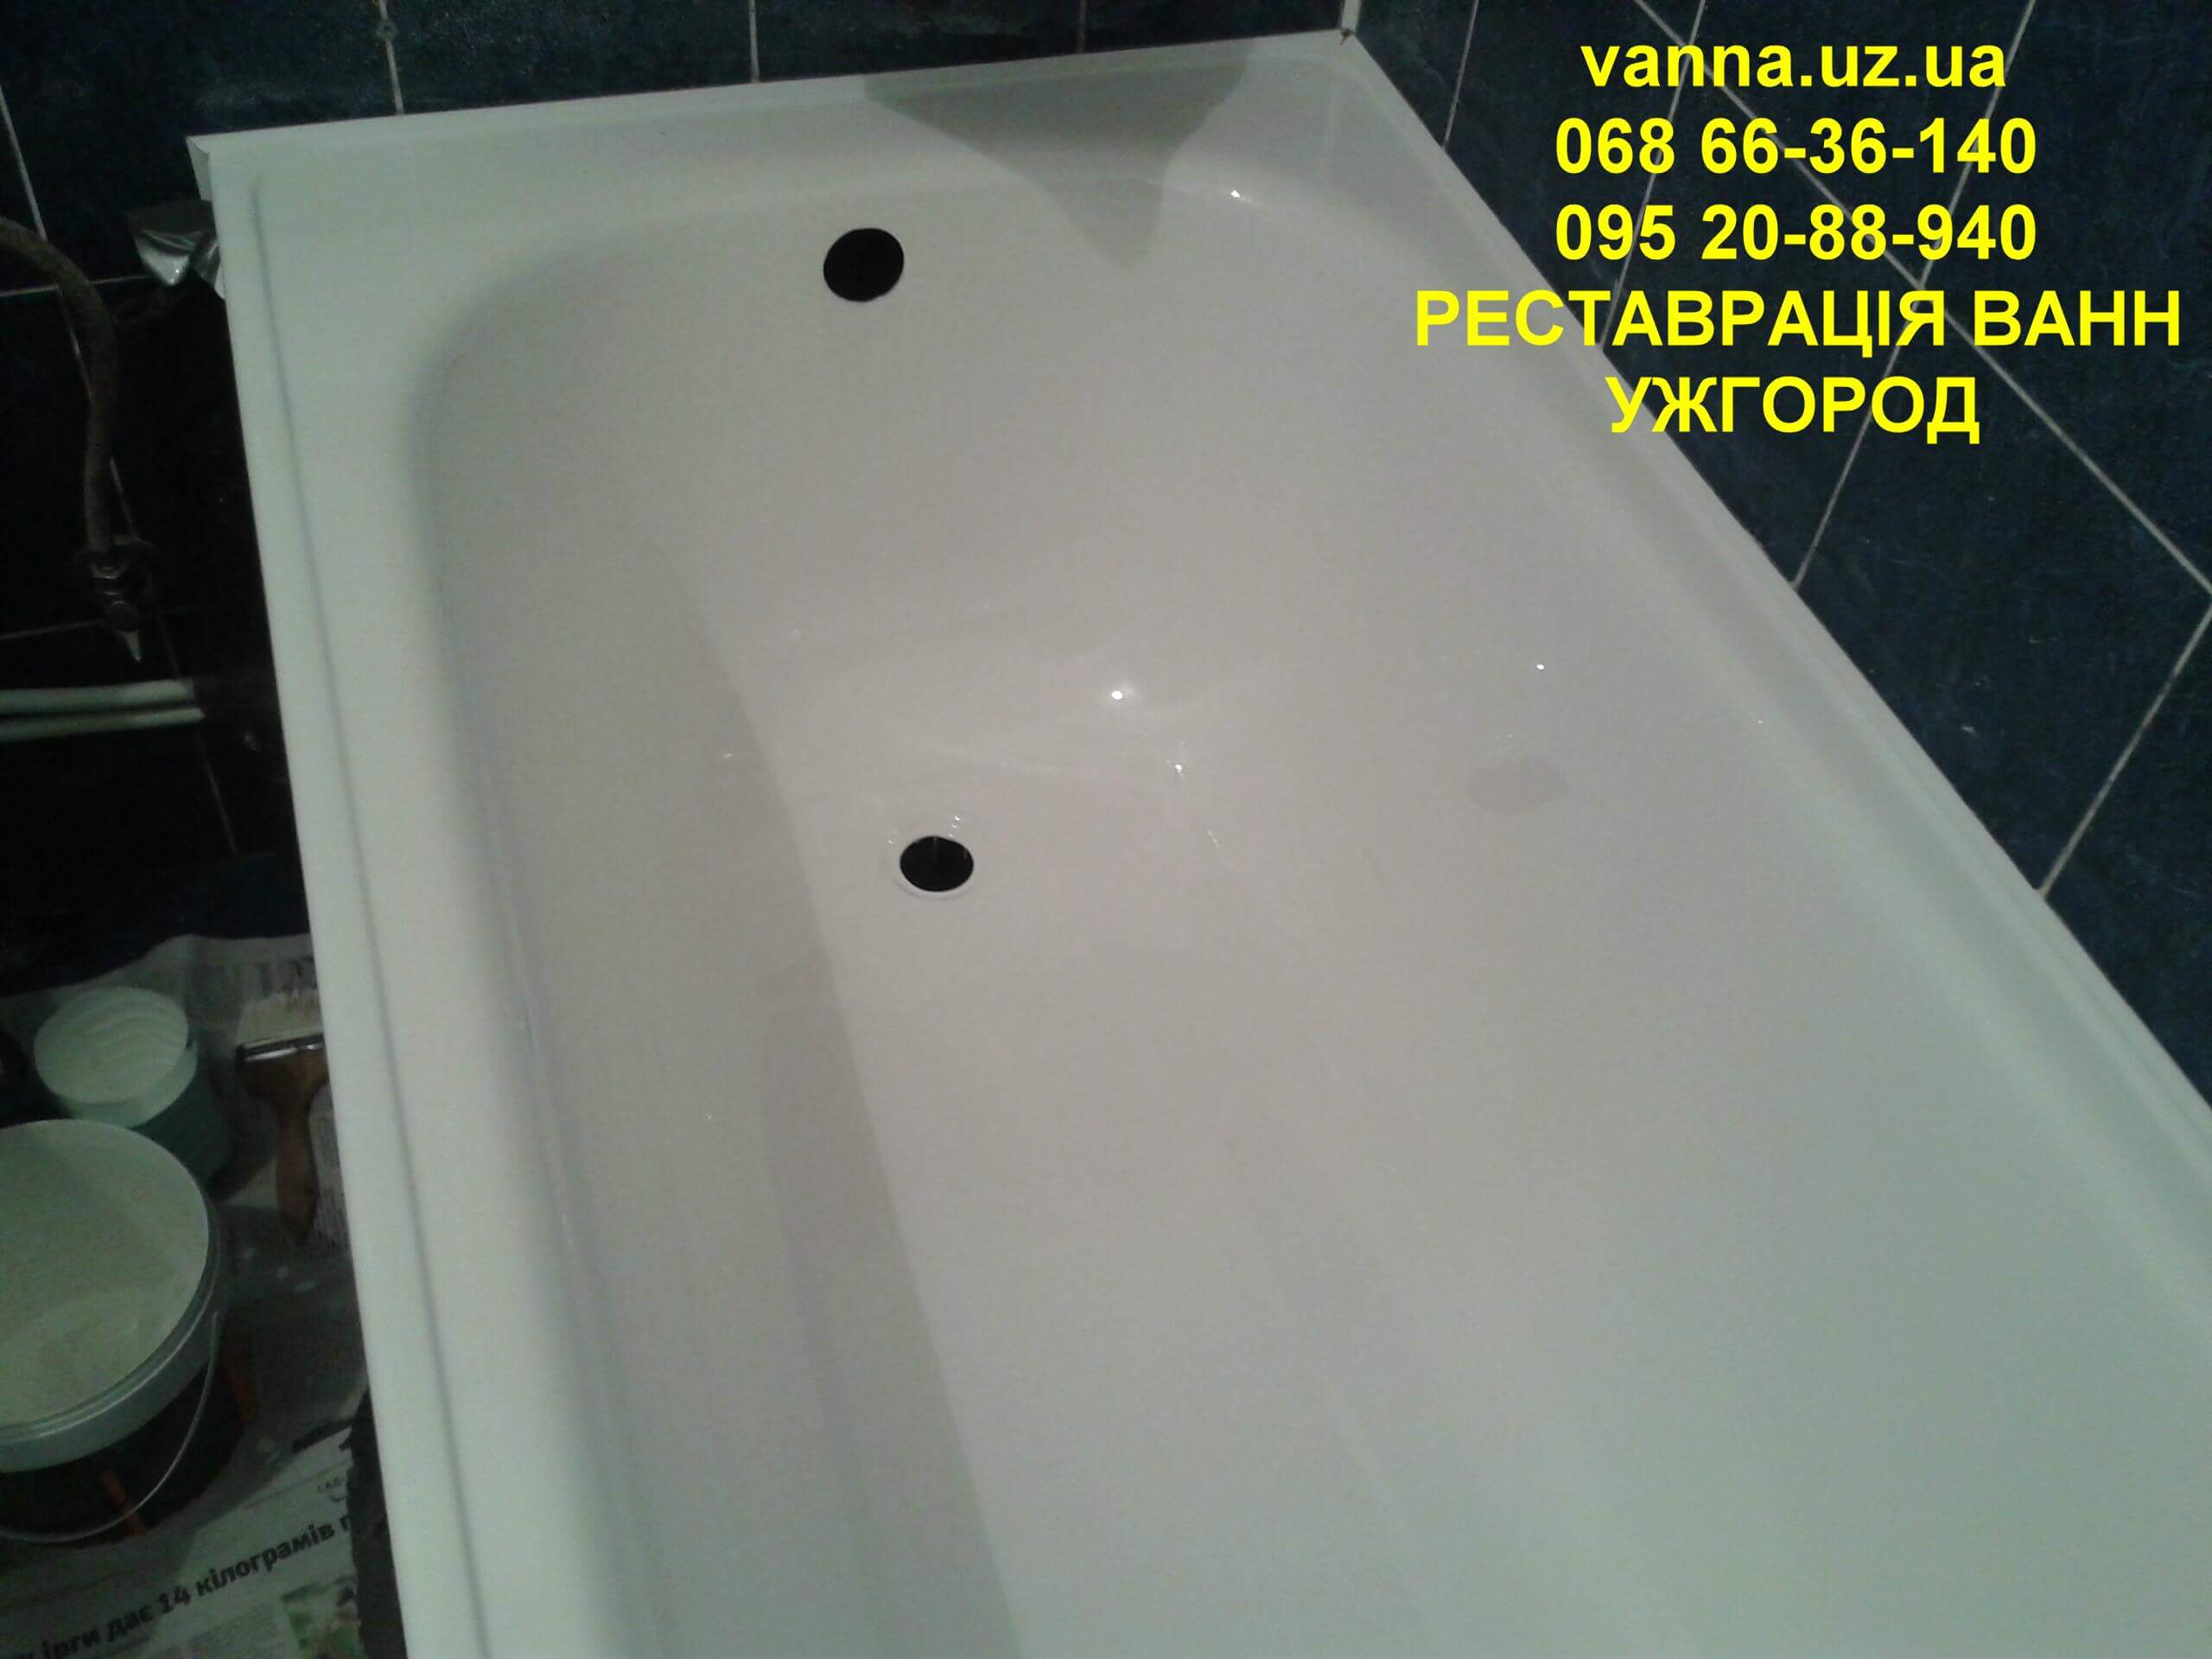 Якісно зроблена реставрація ванни в Ужгороді (2)